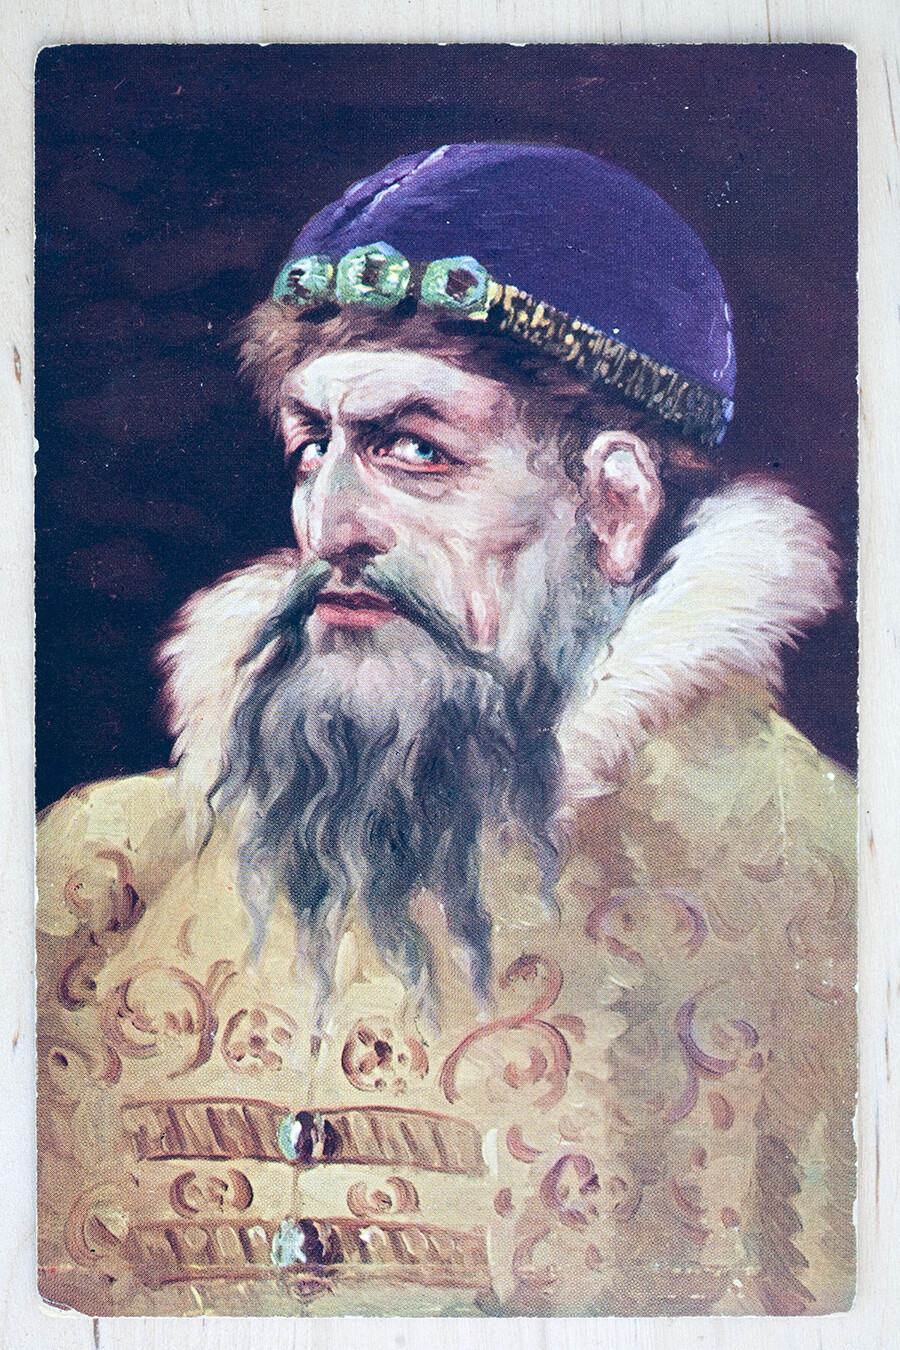 Руска разгледница с почетка 20. века са ликом Ивана Грозног, који је био велики кнез Москве од 1533. до смрти 1584.